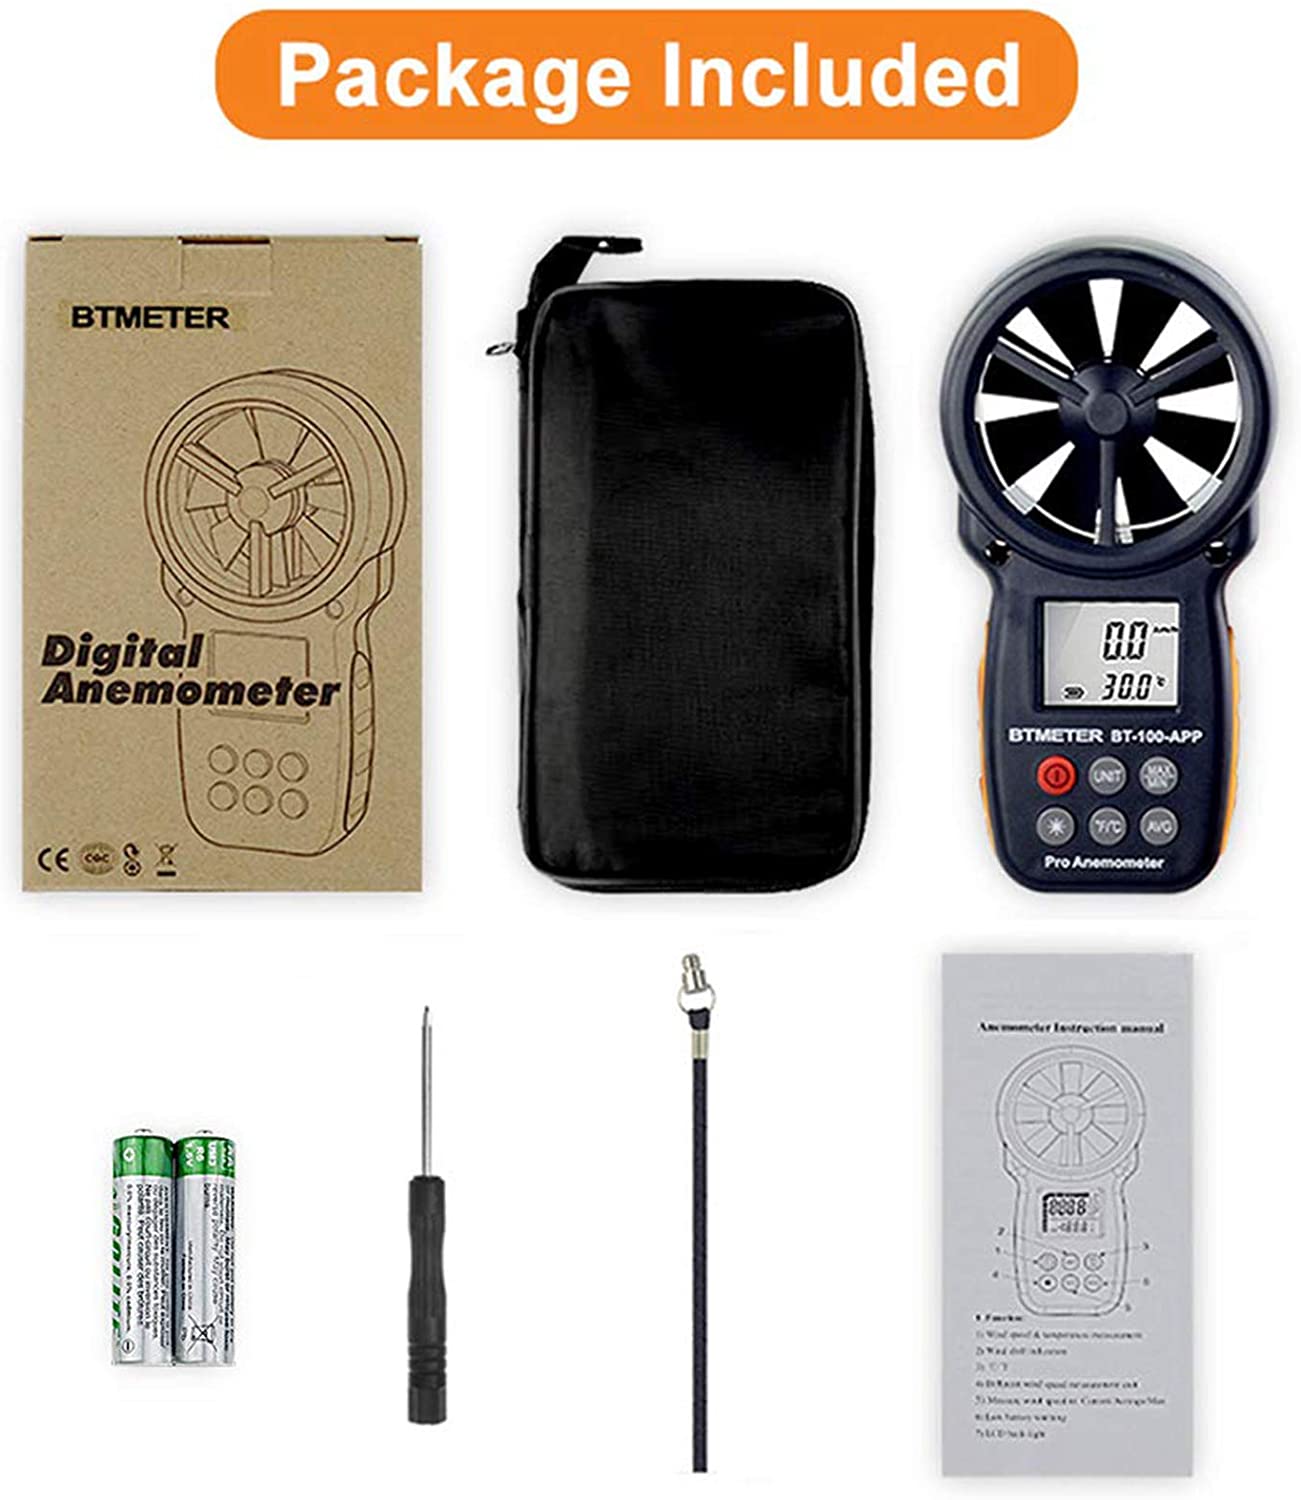 BTMETER Hard Travel Case Bag Protect BT-100 Series Handheld Anemometer 